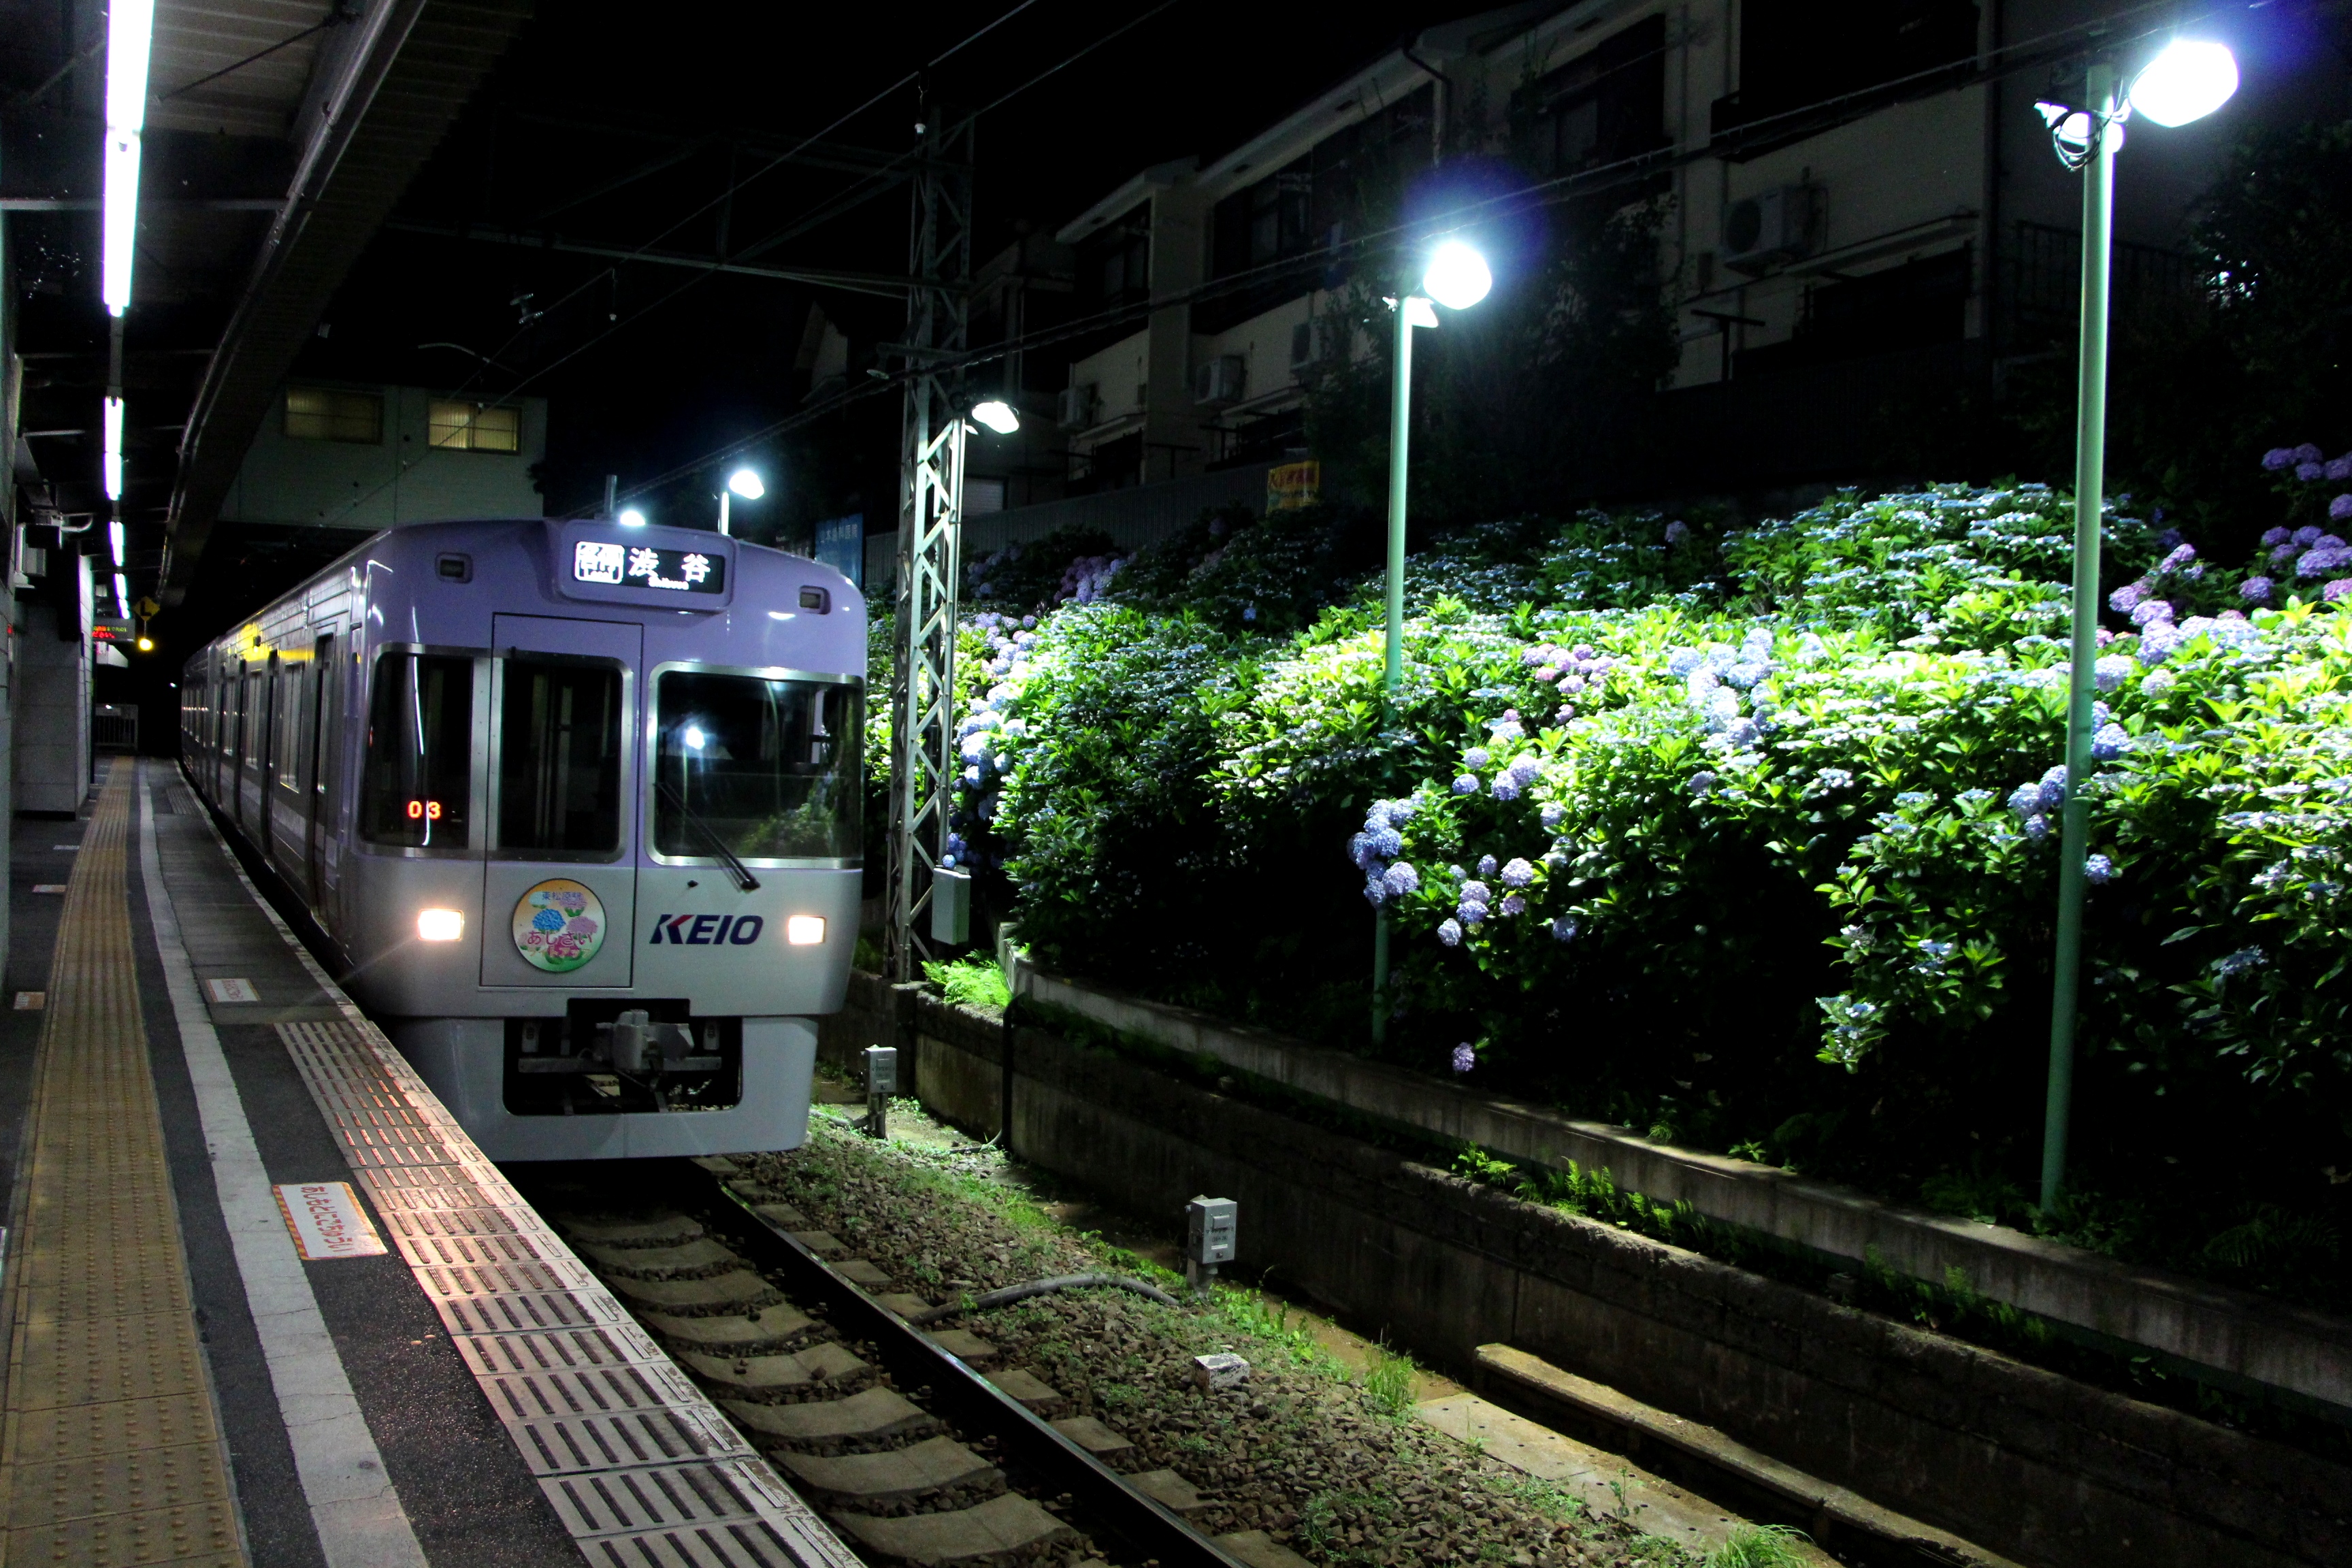 井の頭線 東松原駅でアジサイのライトアップを行います 京王電鉄株式会社のプレスリリース